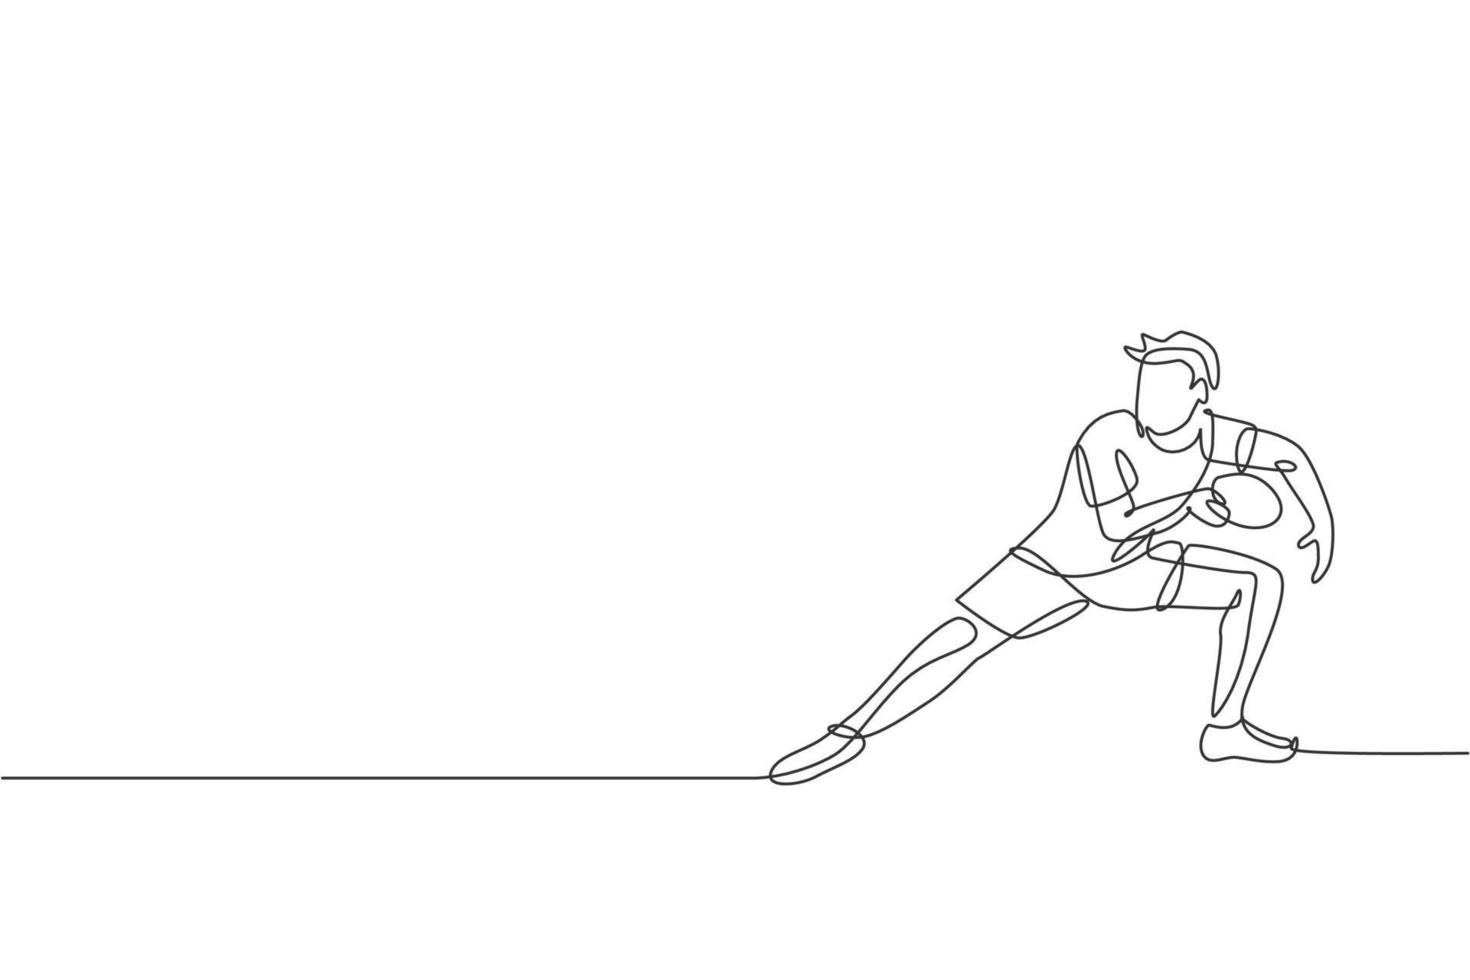 um desenho de linha contínua do jovem jogador de tênis de mesa desportivo pronto para levar a bola rival. conceito de esporte competitivo. ilustração vetorial de desenho de linha única para cartaz de campeonato de pingue-pongue vetor